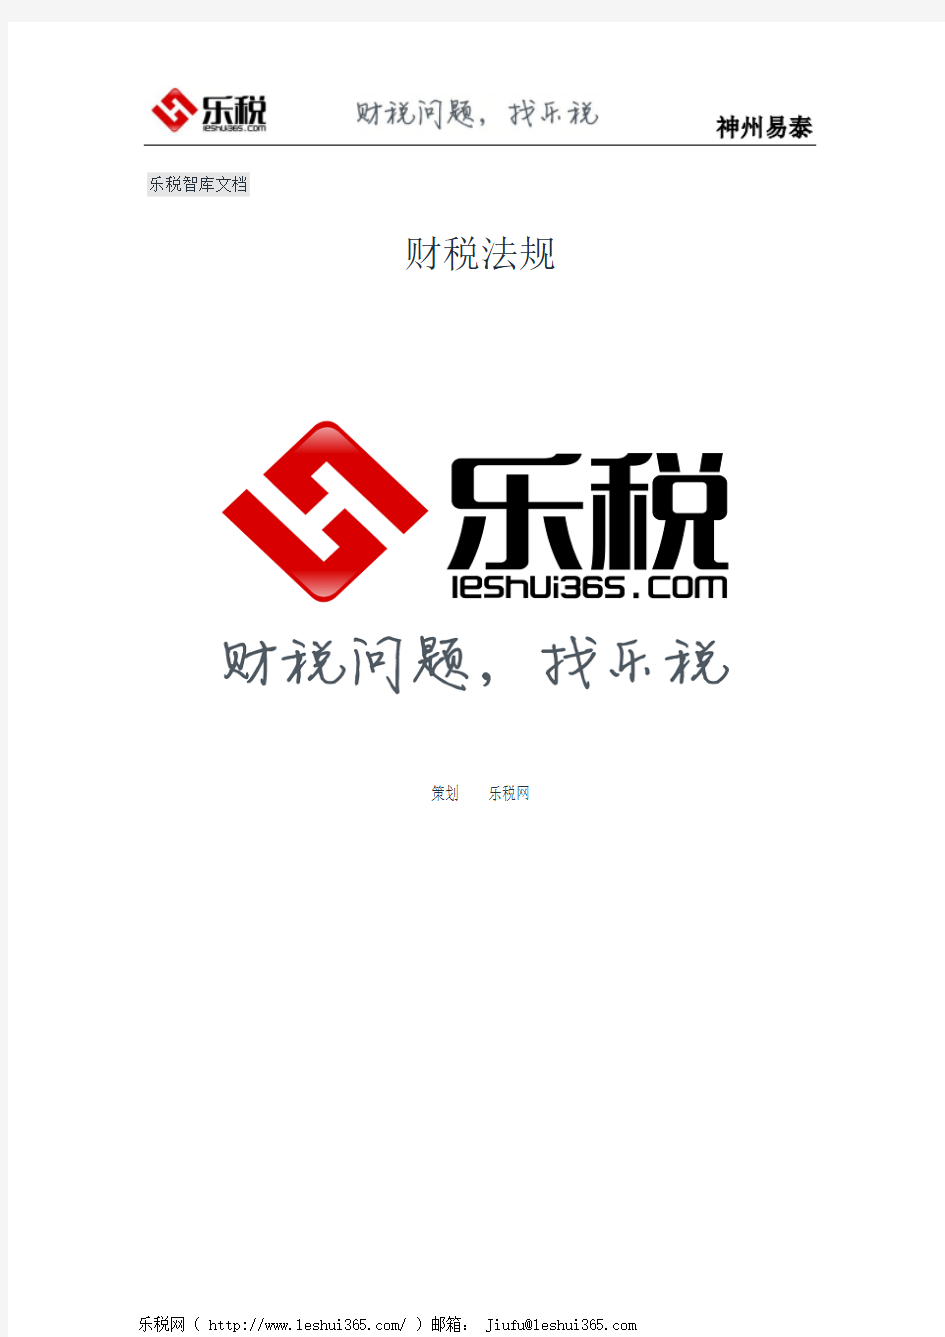 广西壮族自治区地方税务局关于深入贯彻落实“五大发展理念” 服